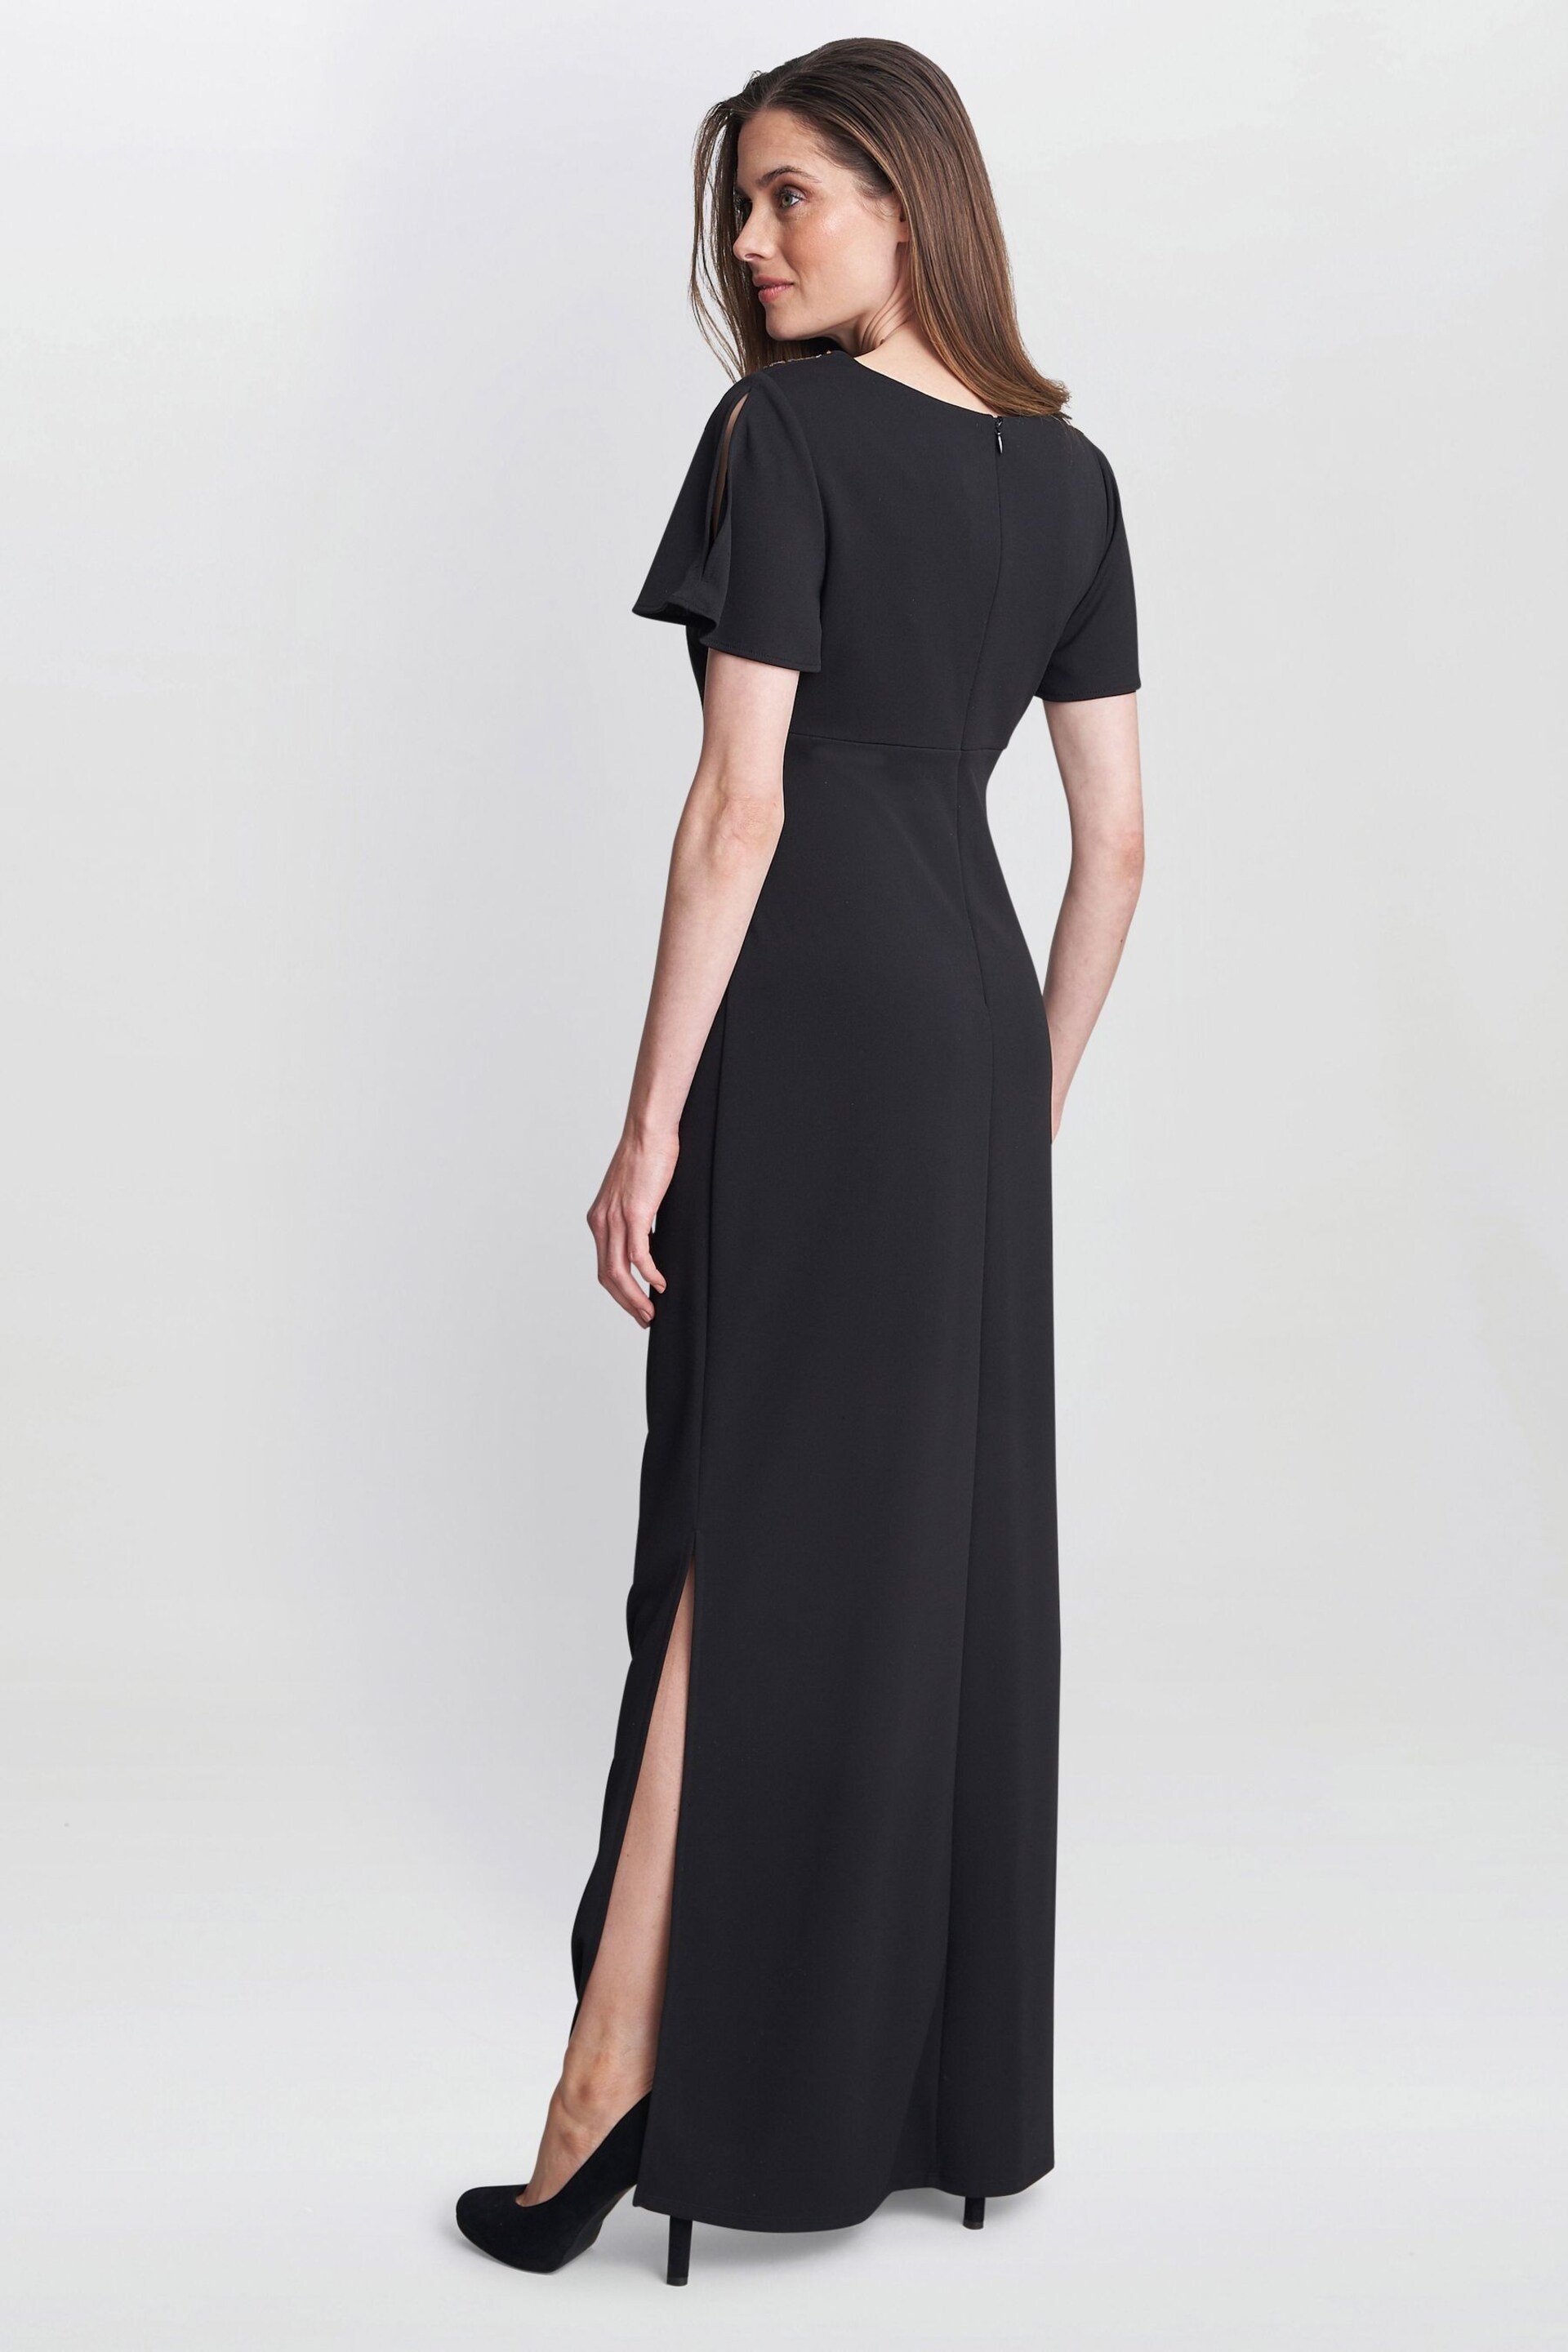 Gina Bacconi Betsy Maxi Black Dress With Keyhole Neck - Image 2 of 6